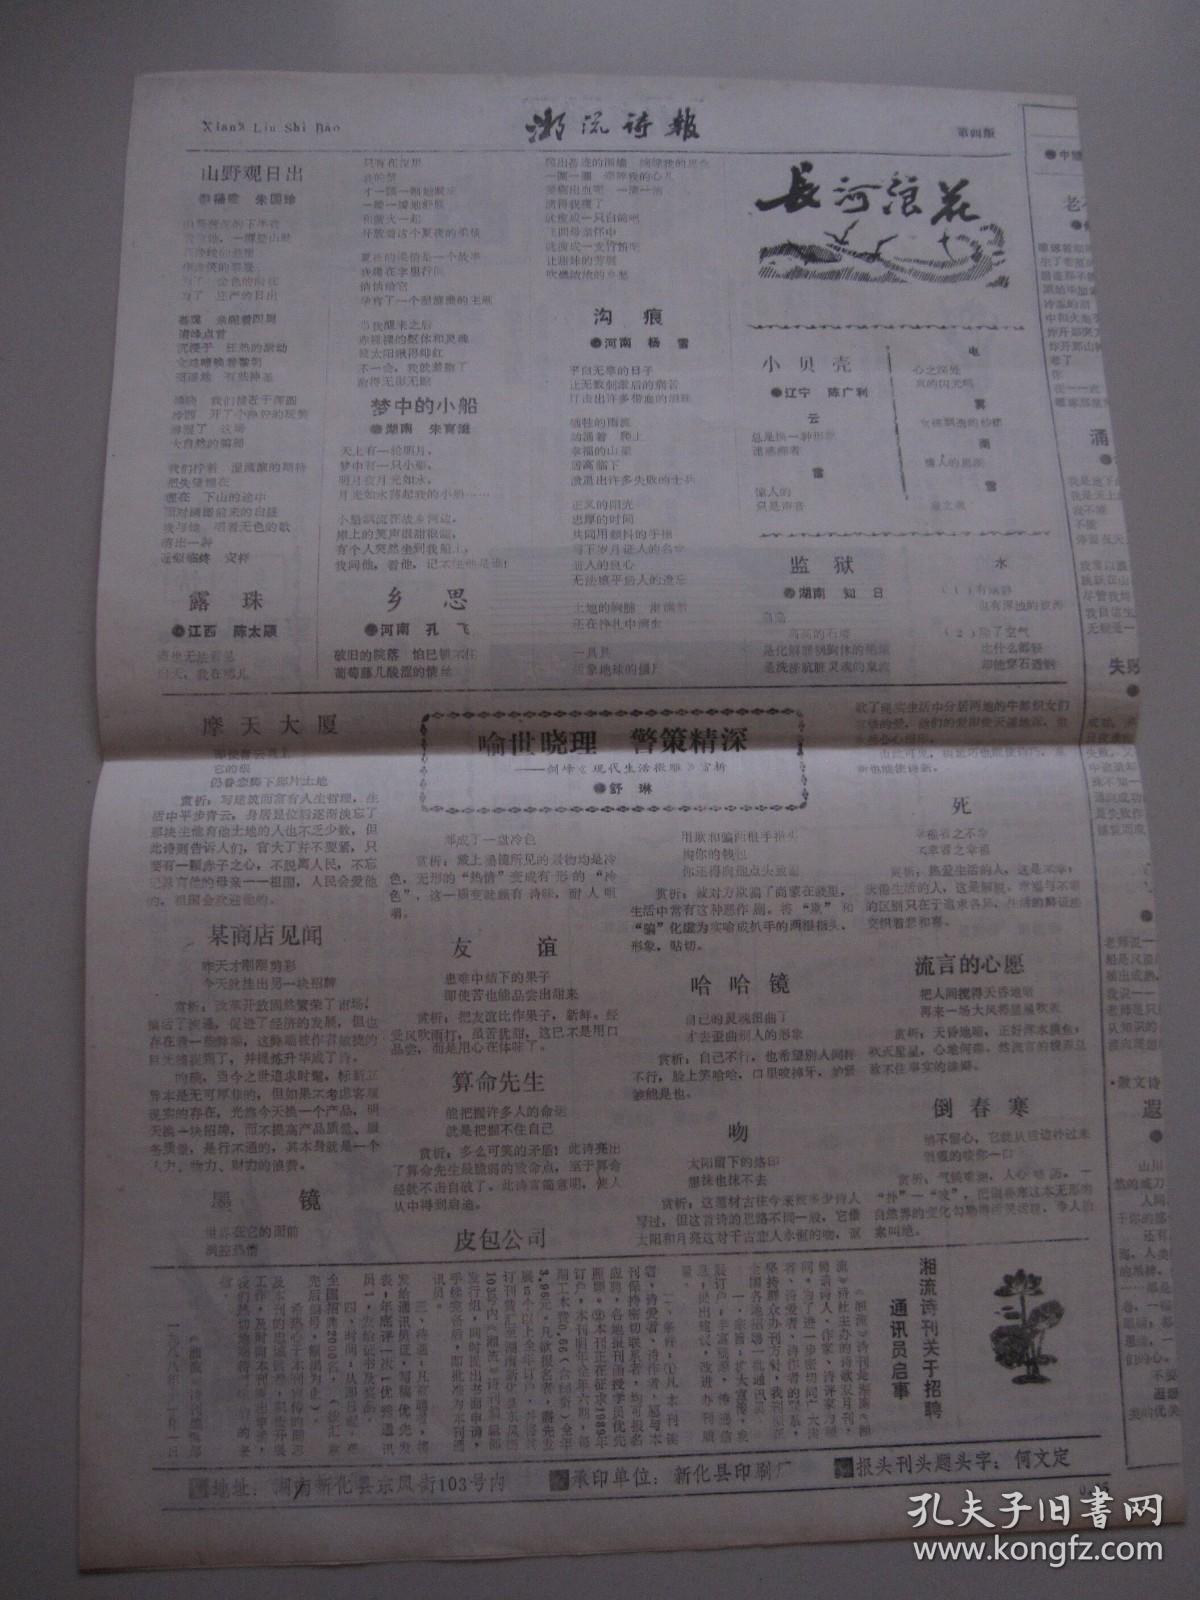 1988年 《湘流诗报》 创刊号（总第1期）《湘流》诗刊增页